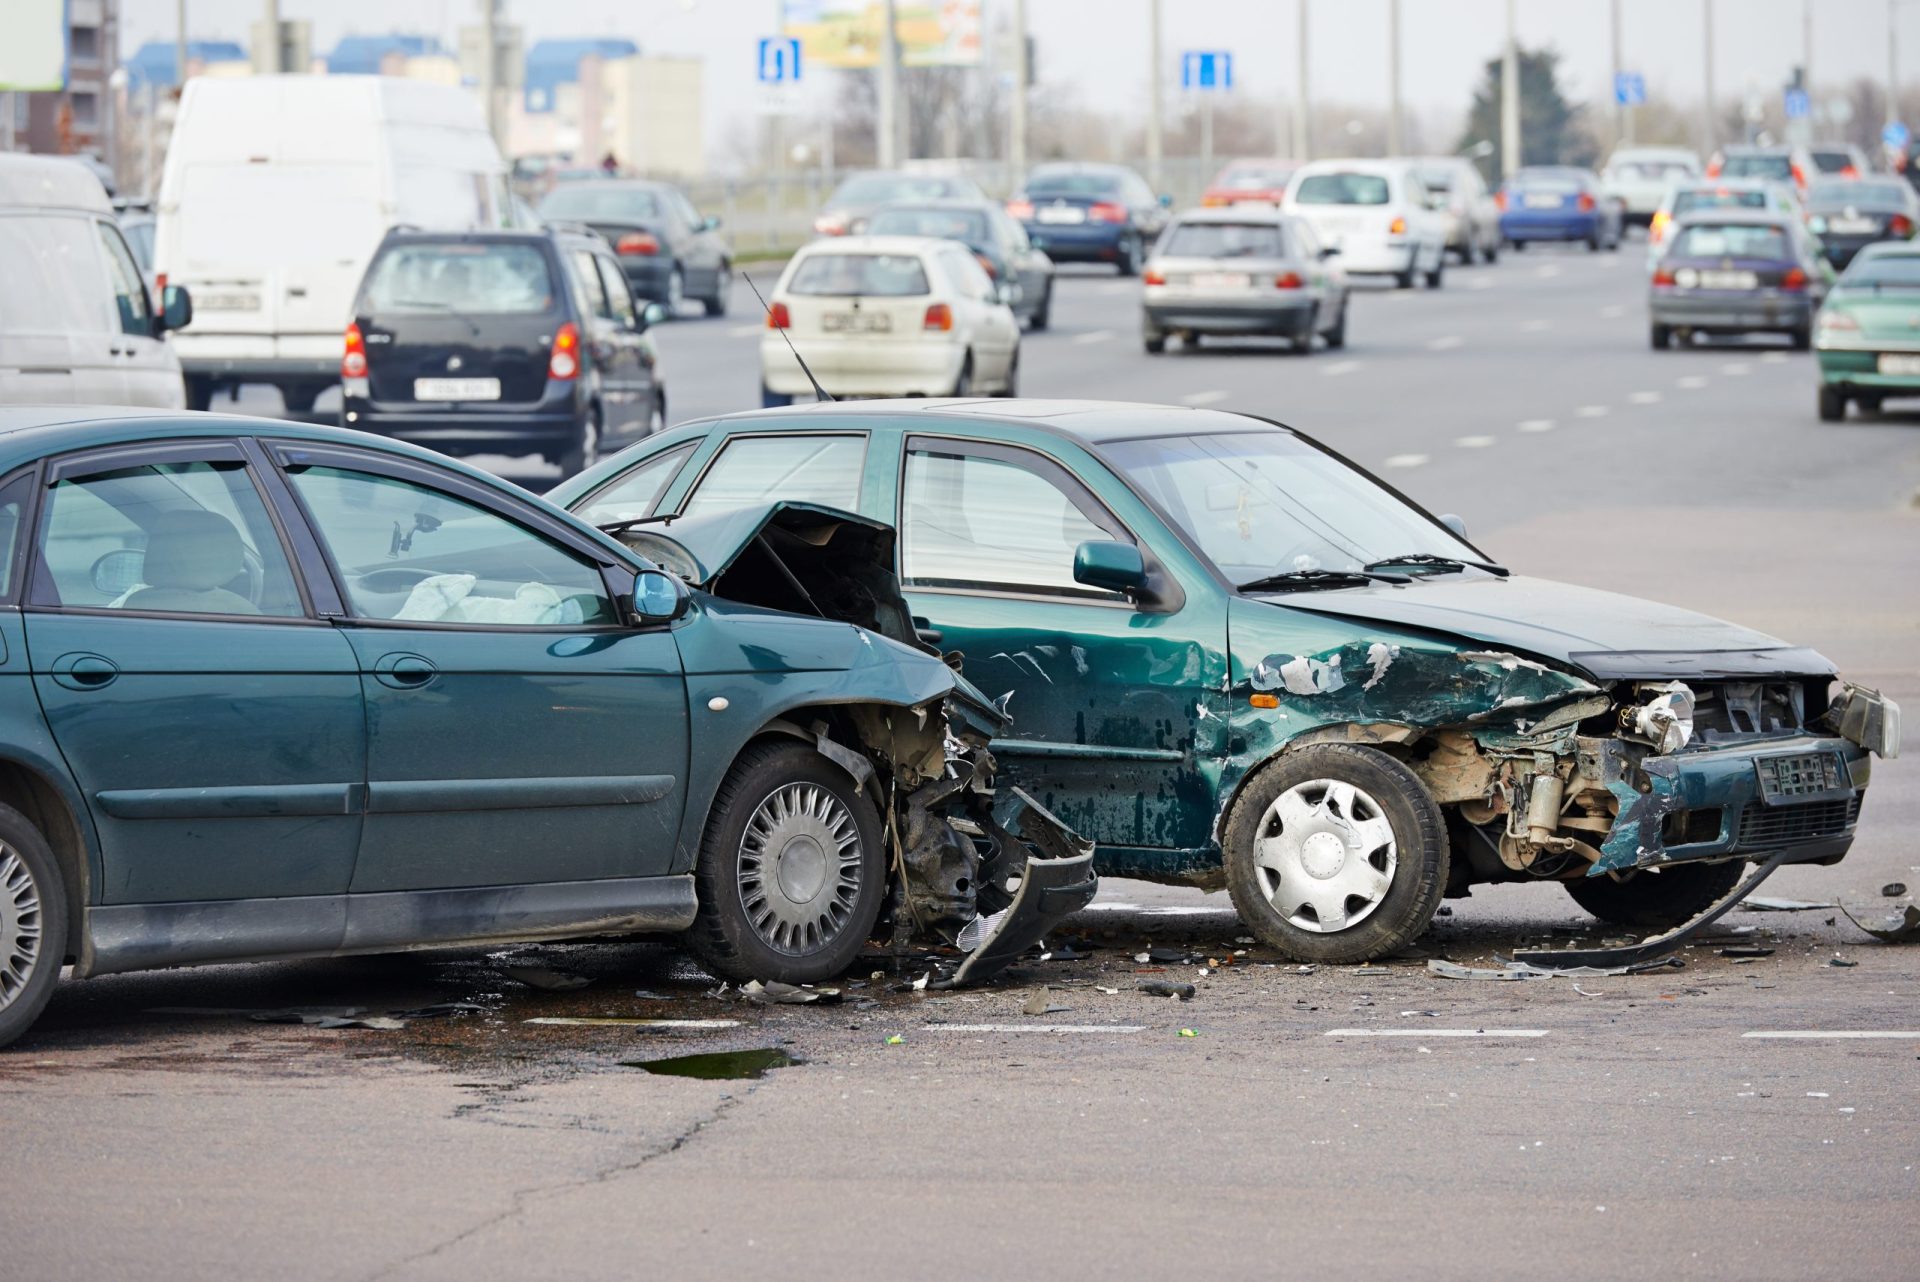 Sinistralidade rodoviária: menos mortos e feridos, mais acidentes